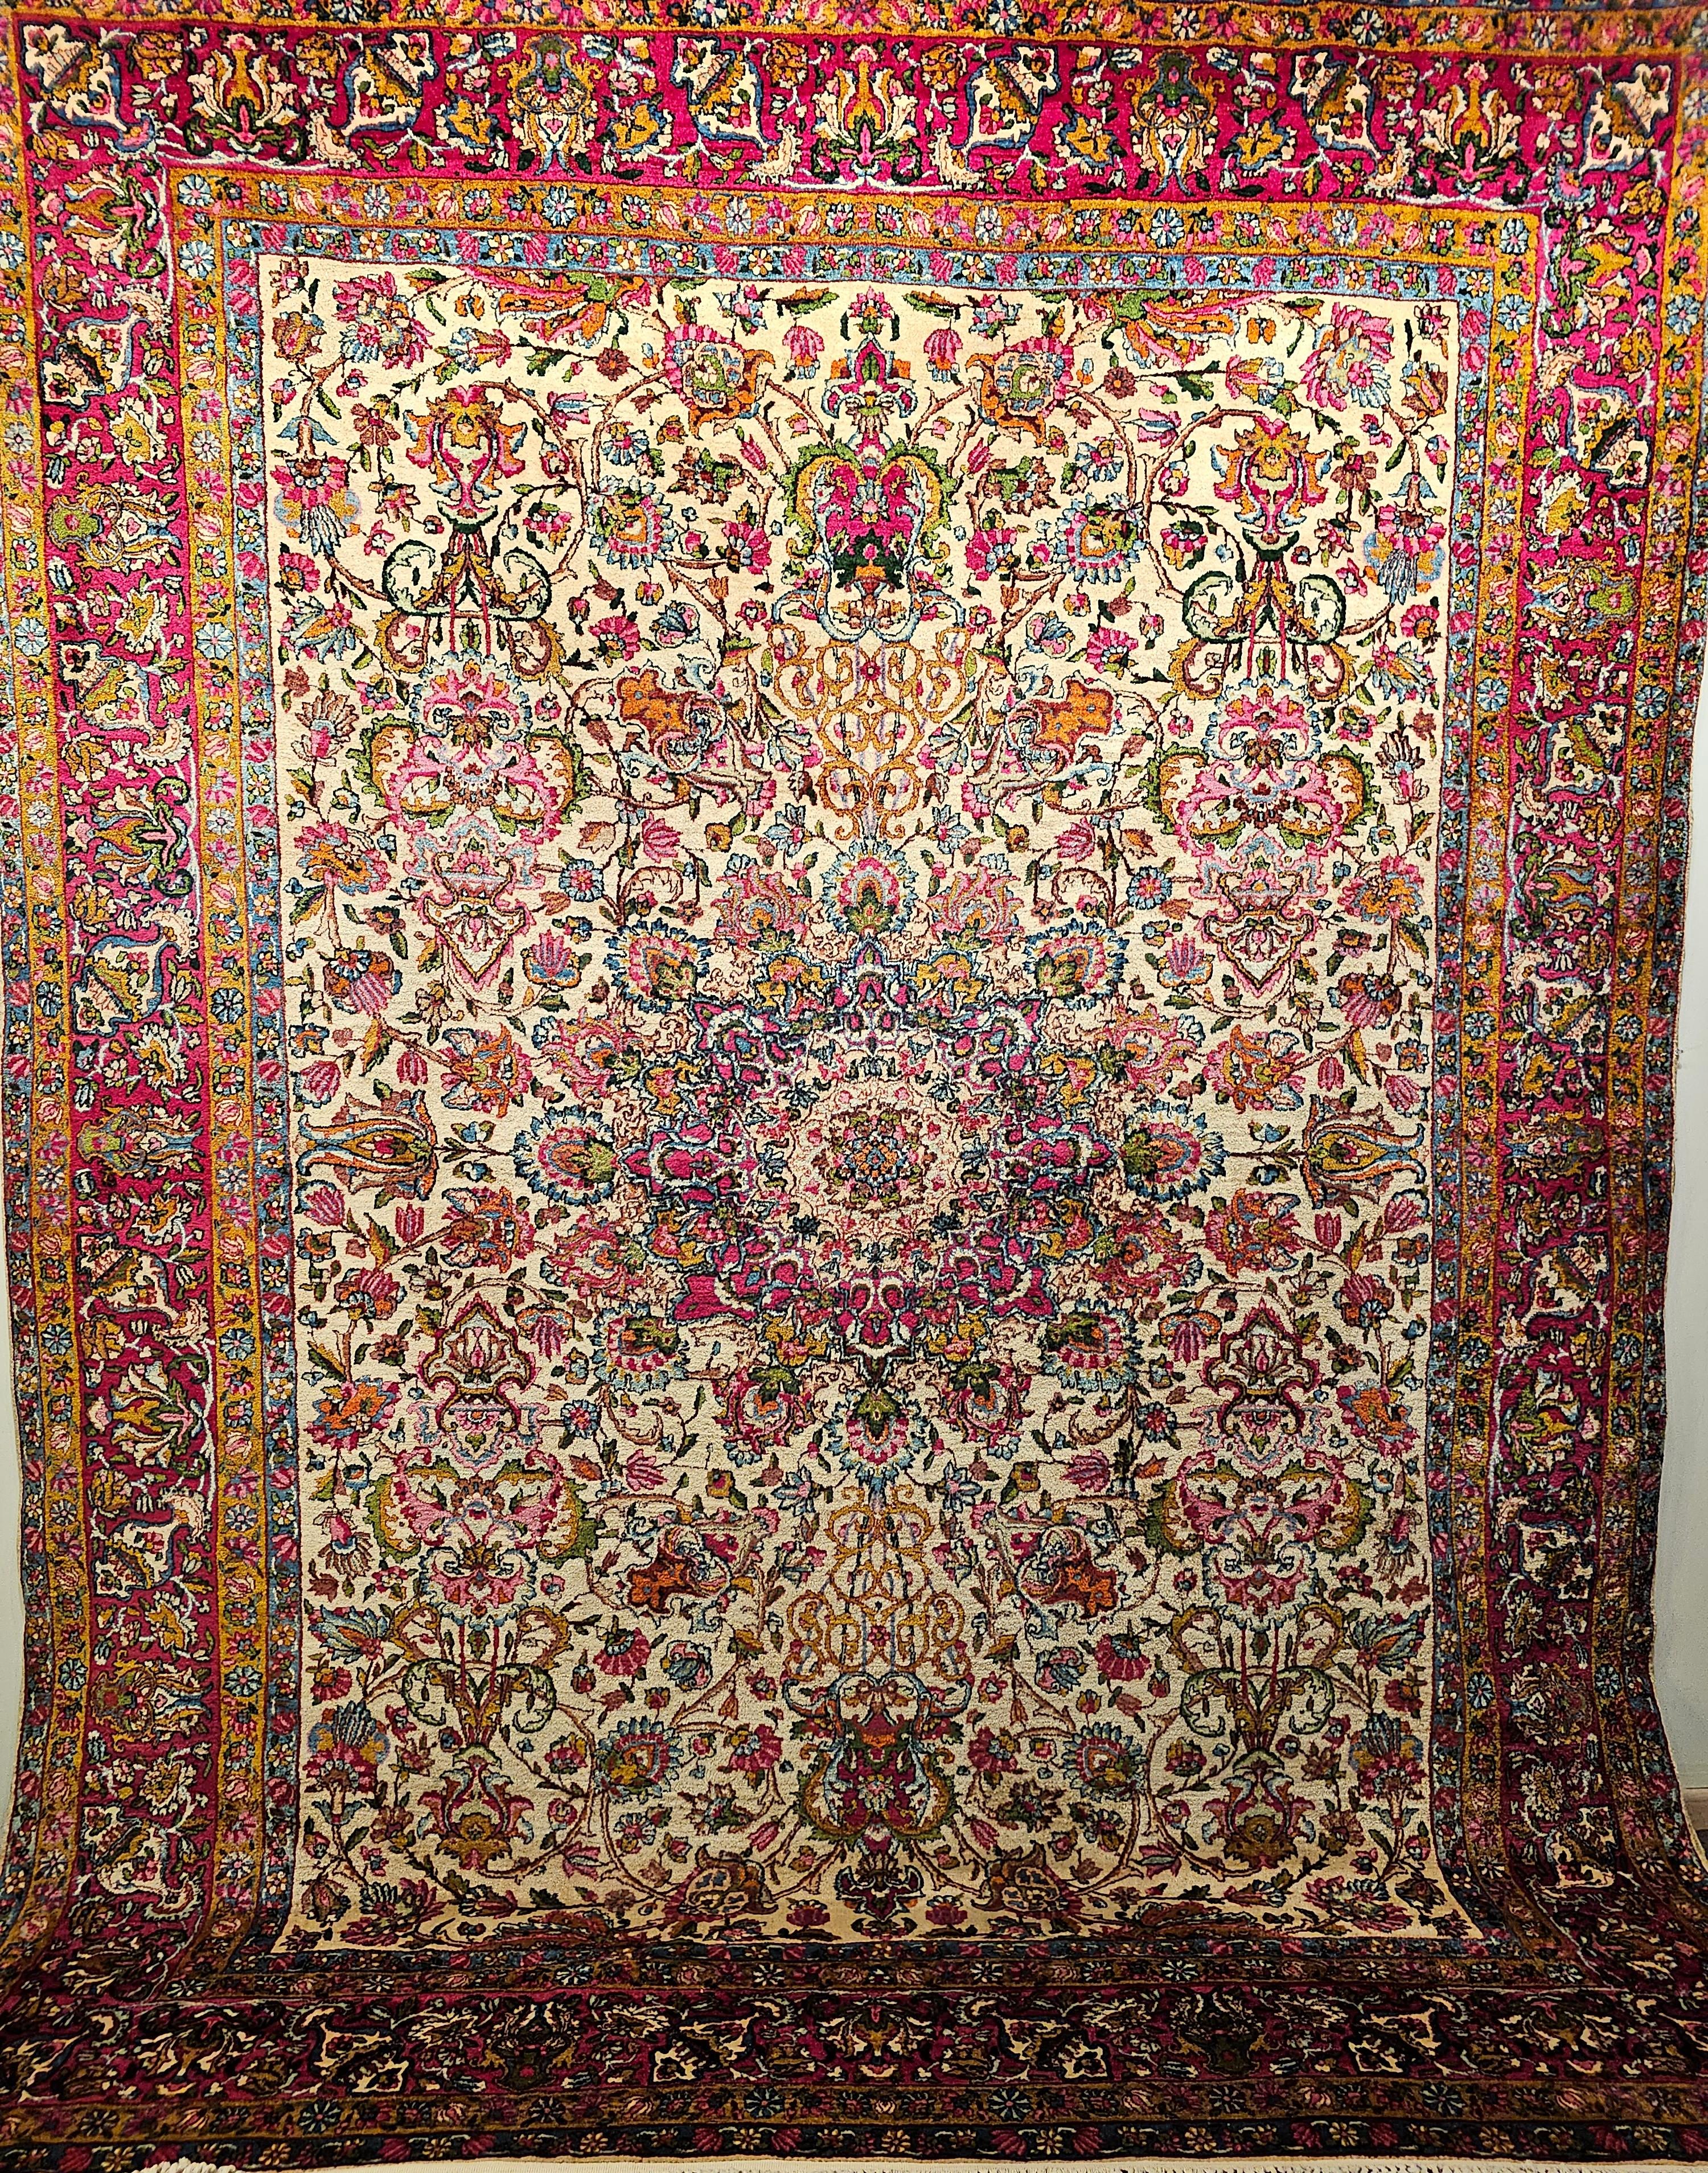 Superbe tapis persan Kerman de couleur à motifs floraux sur fond ivoire avec des couleurs rouges, roses, vertes, bleues et bien d'autres encore.  Le tapis est doté d'un magnifique design et d'une merveilleuse combinaison de couleurs.  Le tapis